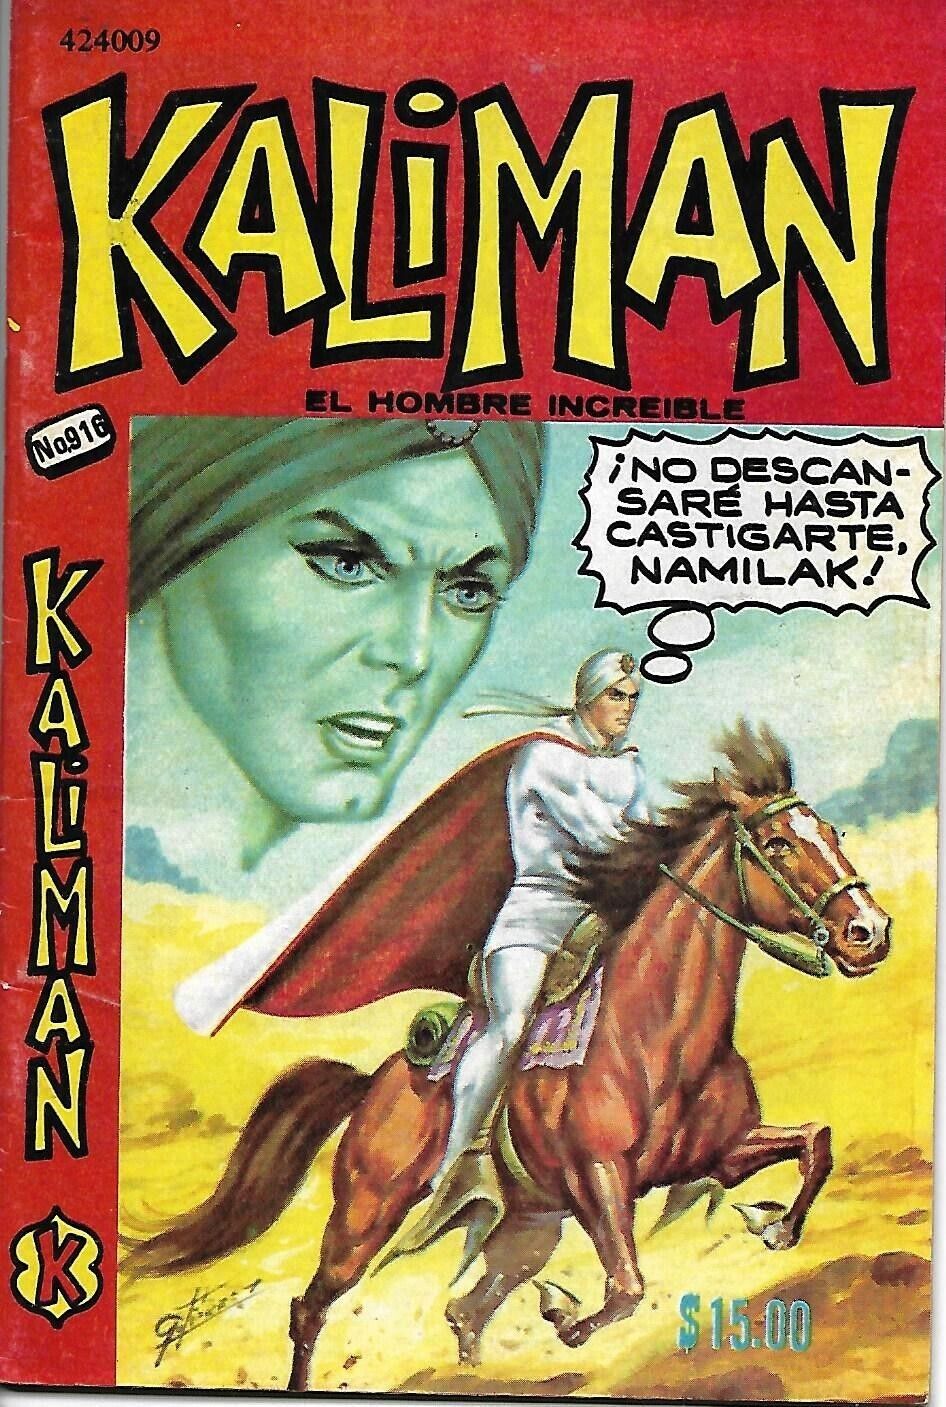 Kaliman El Hombre Increible #916 - Junio 17, 1983 - Mexico